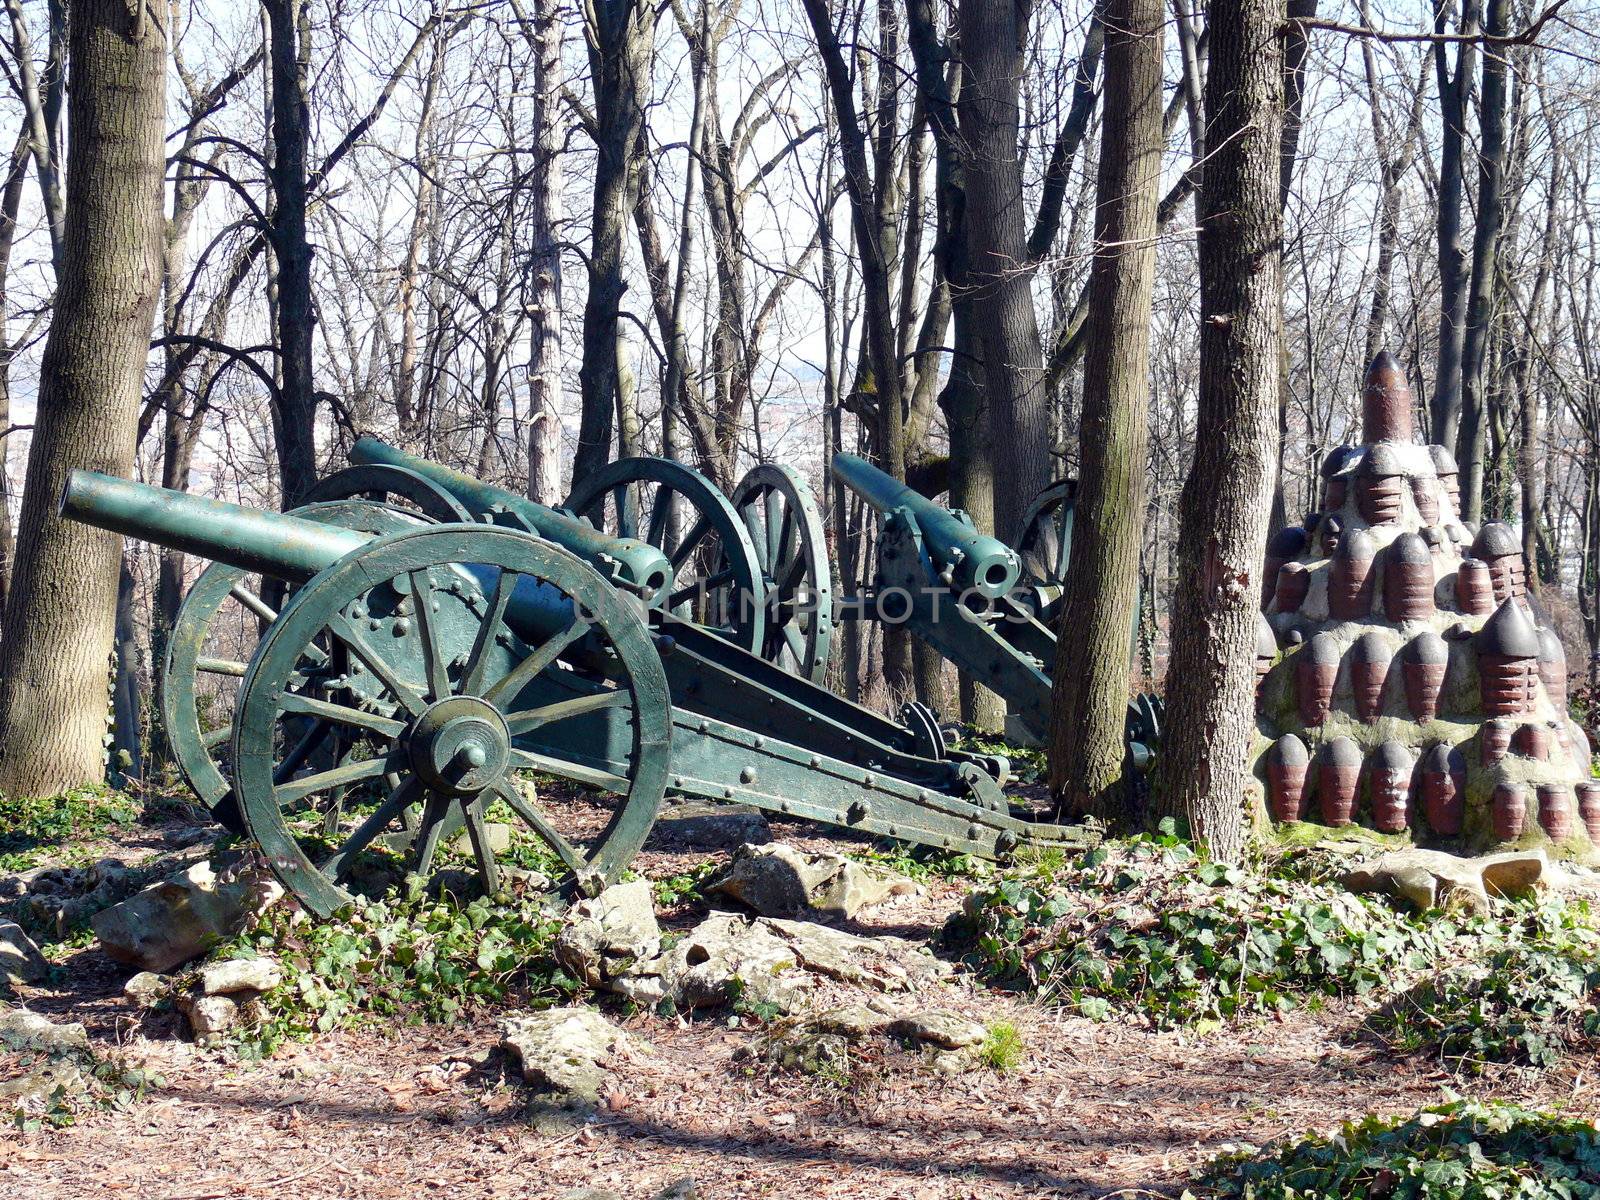 Cannons in Skobelev Park, Pleven, Bulgaria by Stoyanov